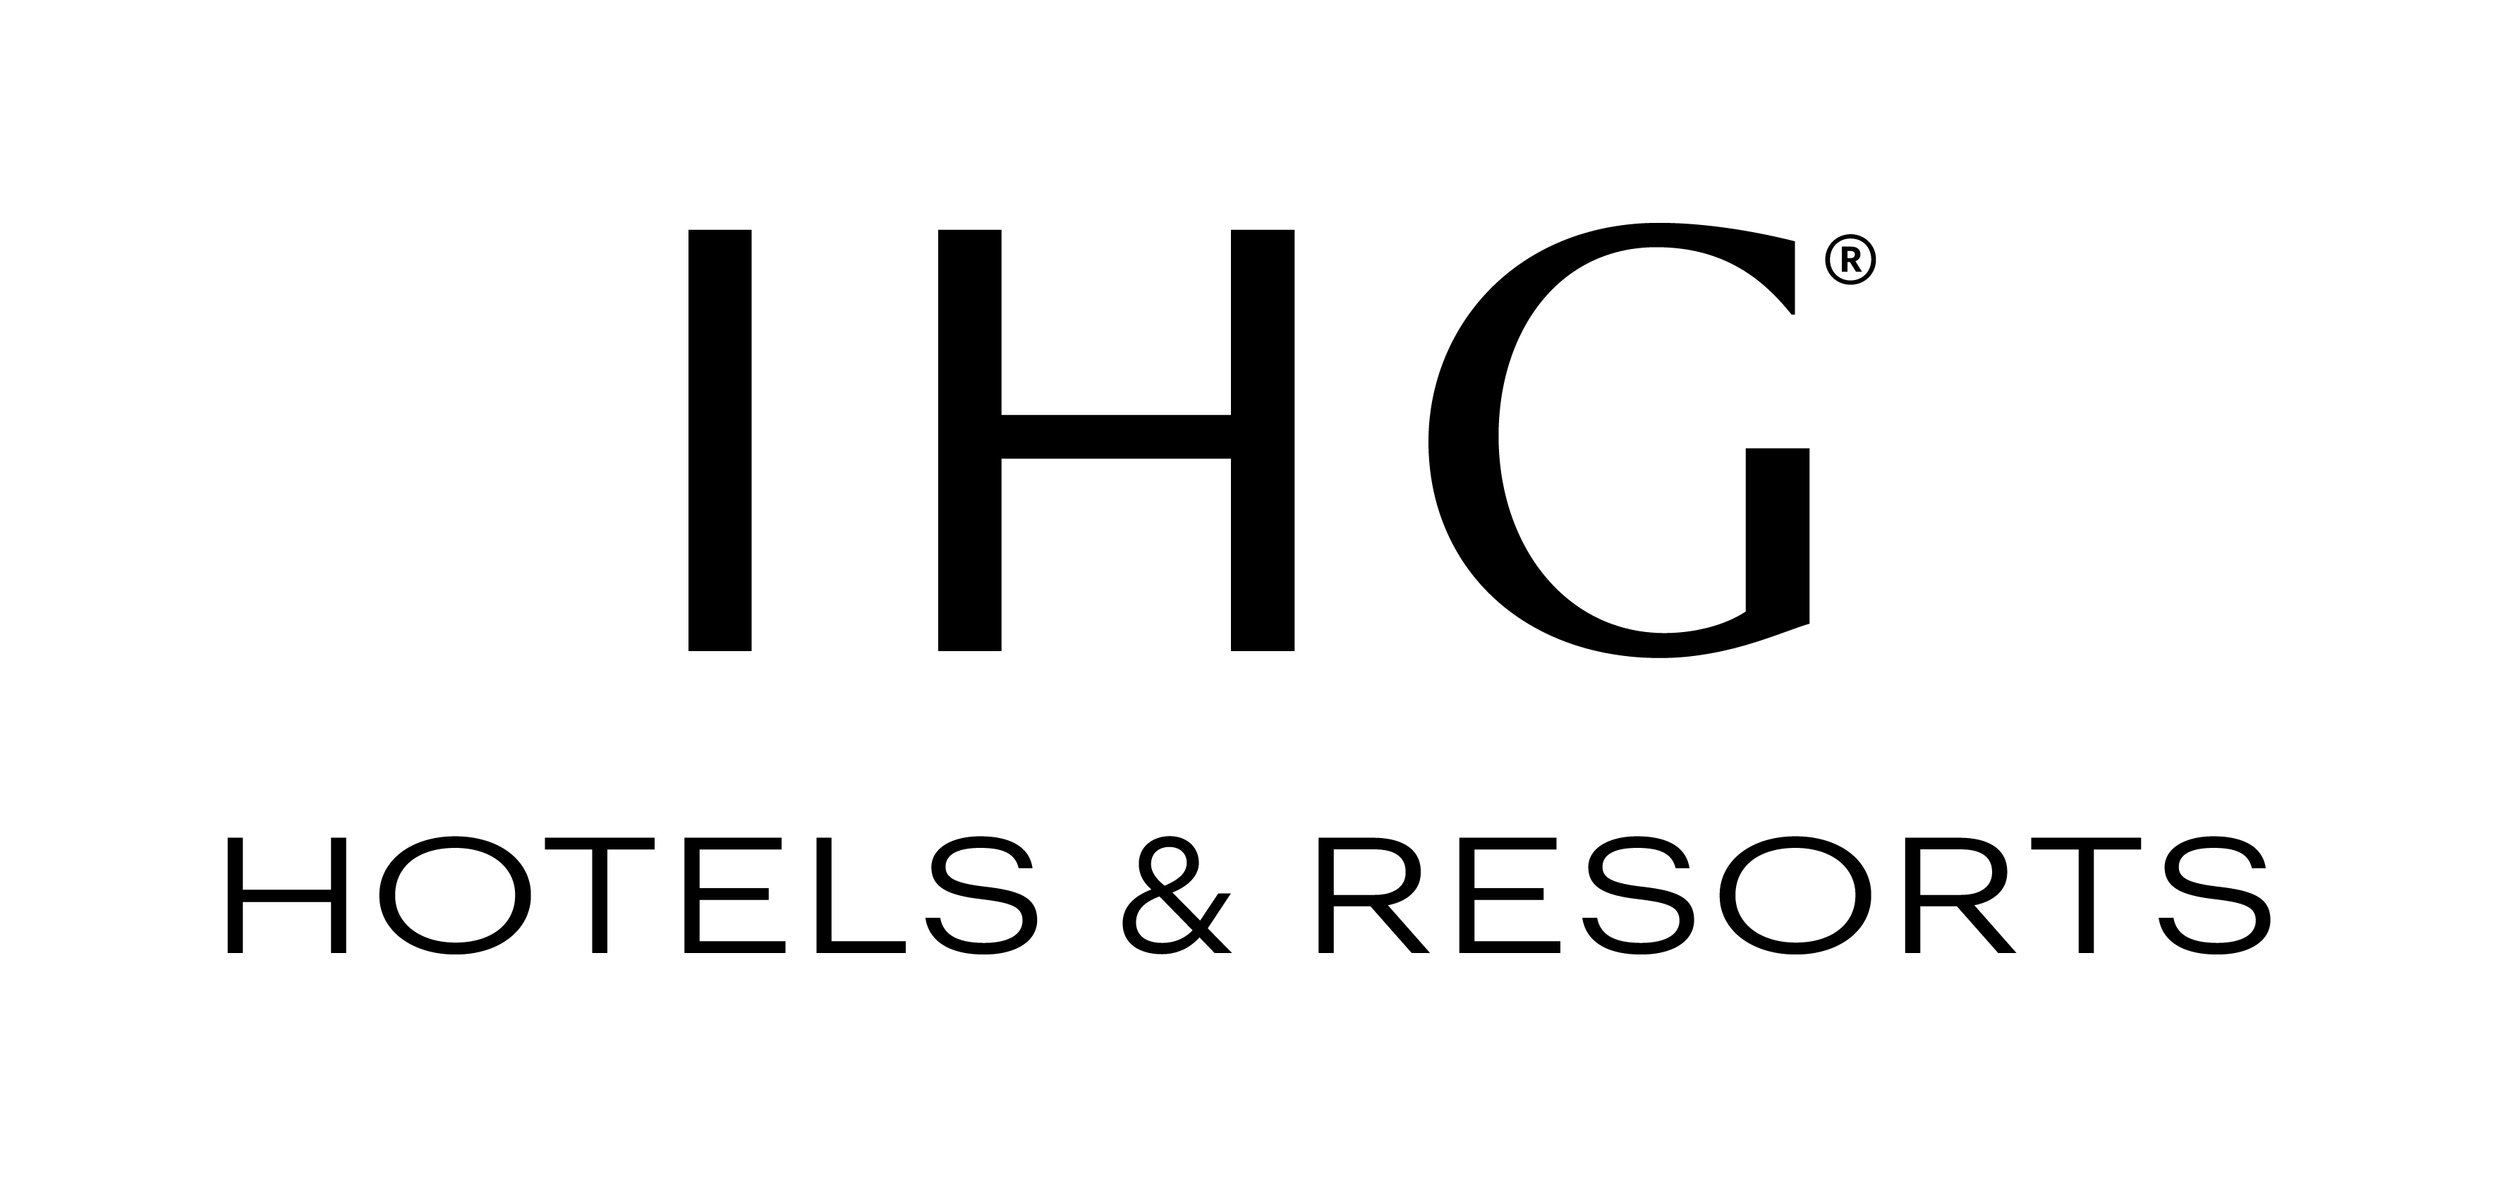 IHG Hotels & Resorts - Logo.jpg